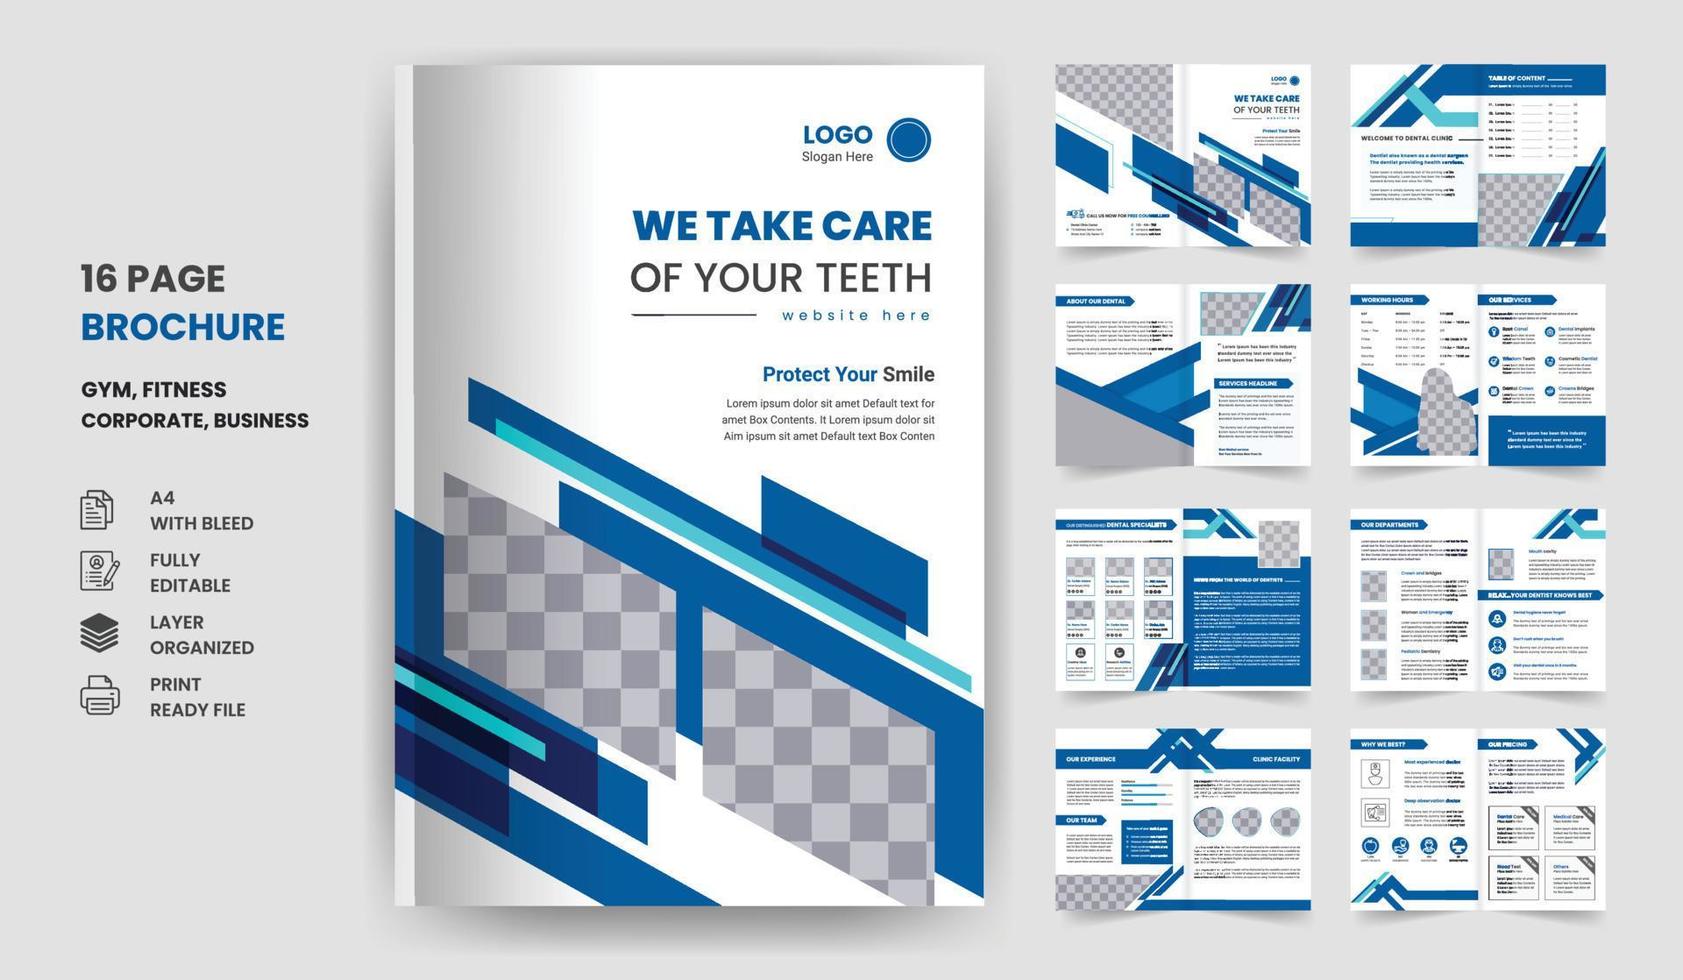 16 pages de soins de santé dentaires médicaux, rapport annuel, conception de brochures d'entreprises hospitalières de plusieurs pages vecteur